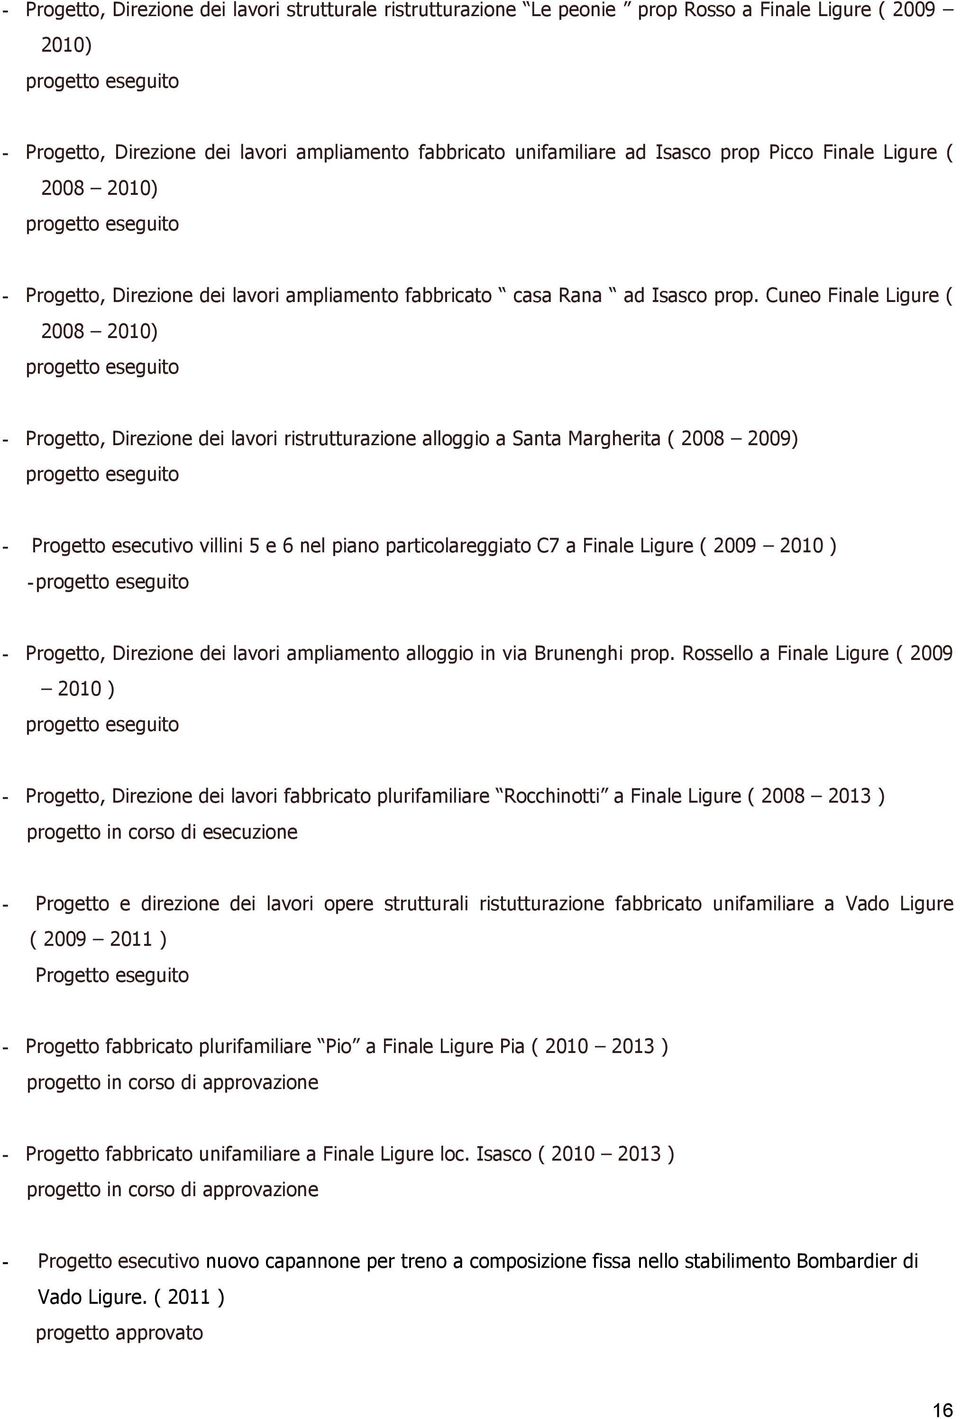 Cuneo Finale Ligure ( 2008 2010) - Progetto, Direzione dei lavori ristrutturazione alloggio a Santa Margherita ( 2008 2009) - Progetto esecutivo villini 5 e 6 nel piano particolareggiato C7 a Finale